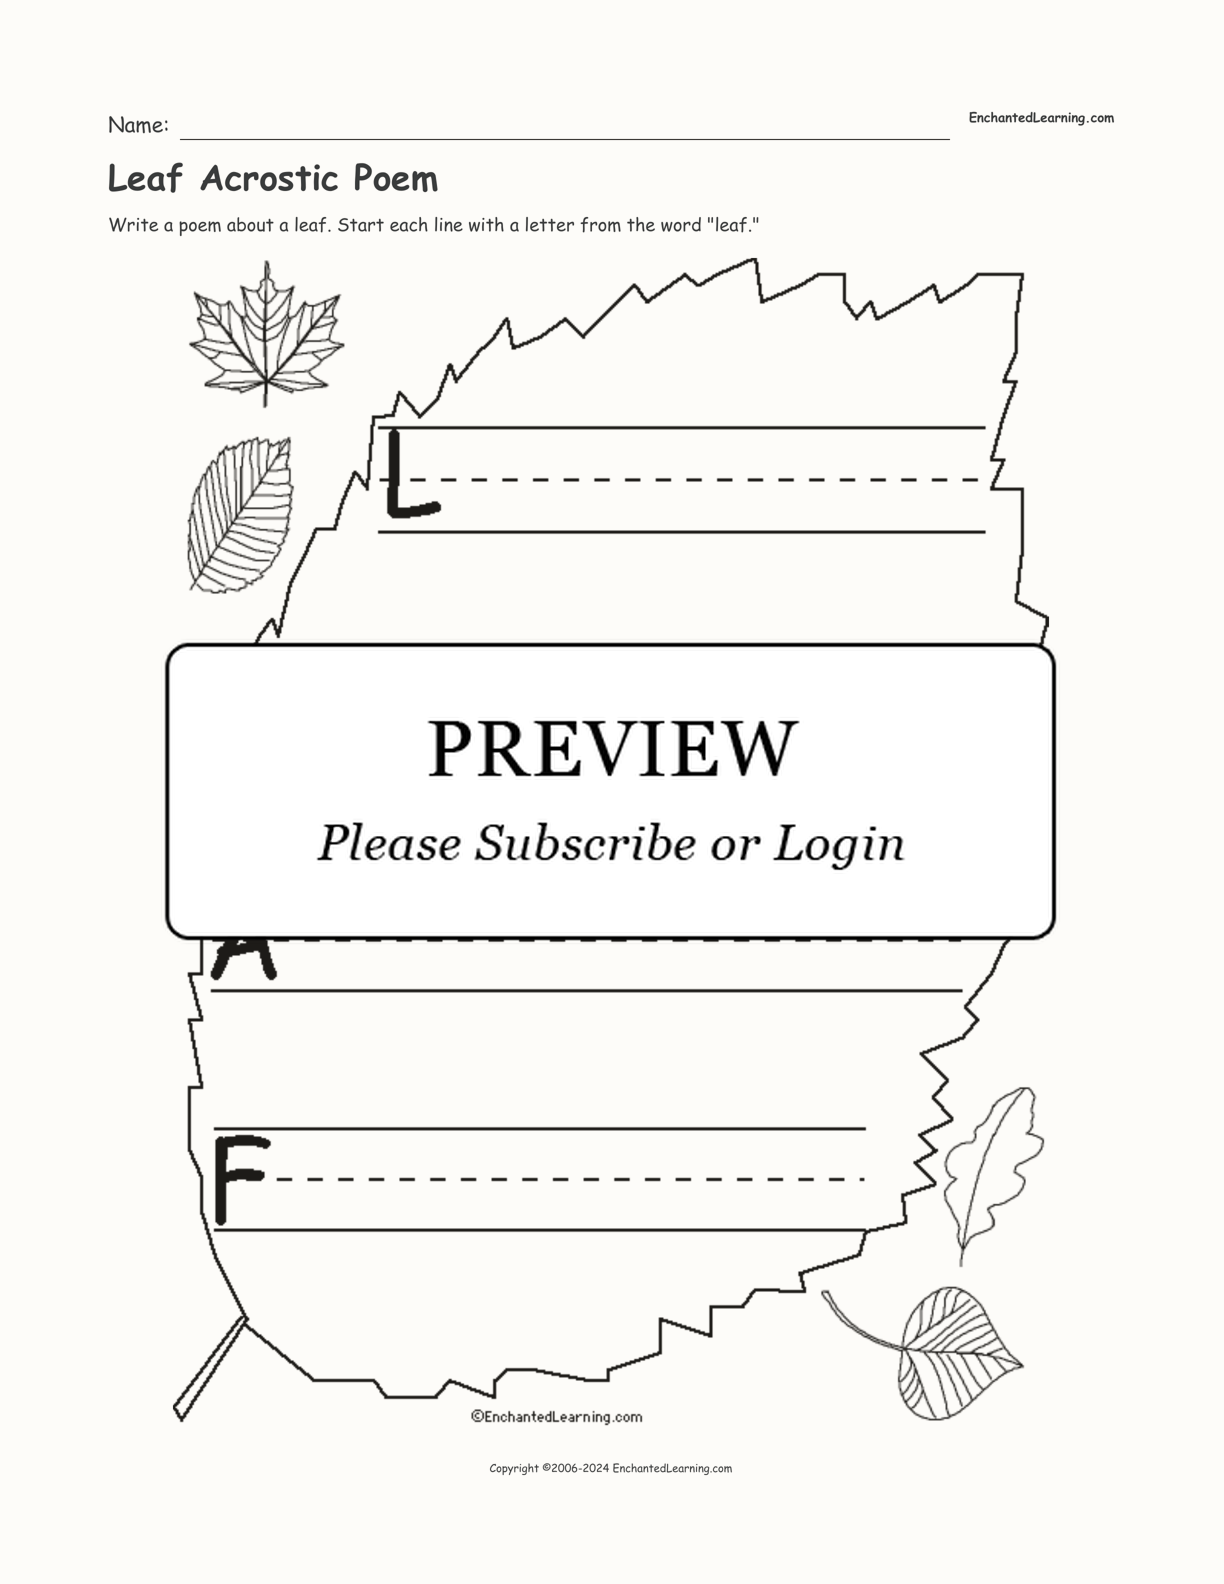 Leaf Acrostic Poem interactive worksheet page 1